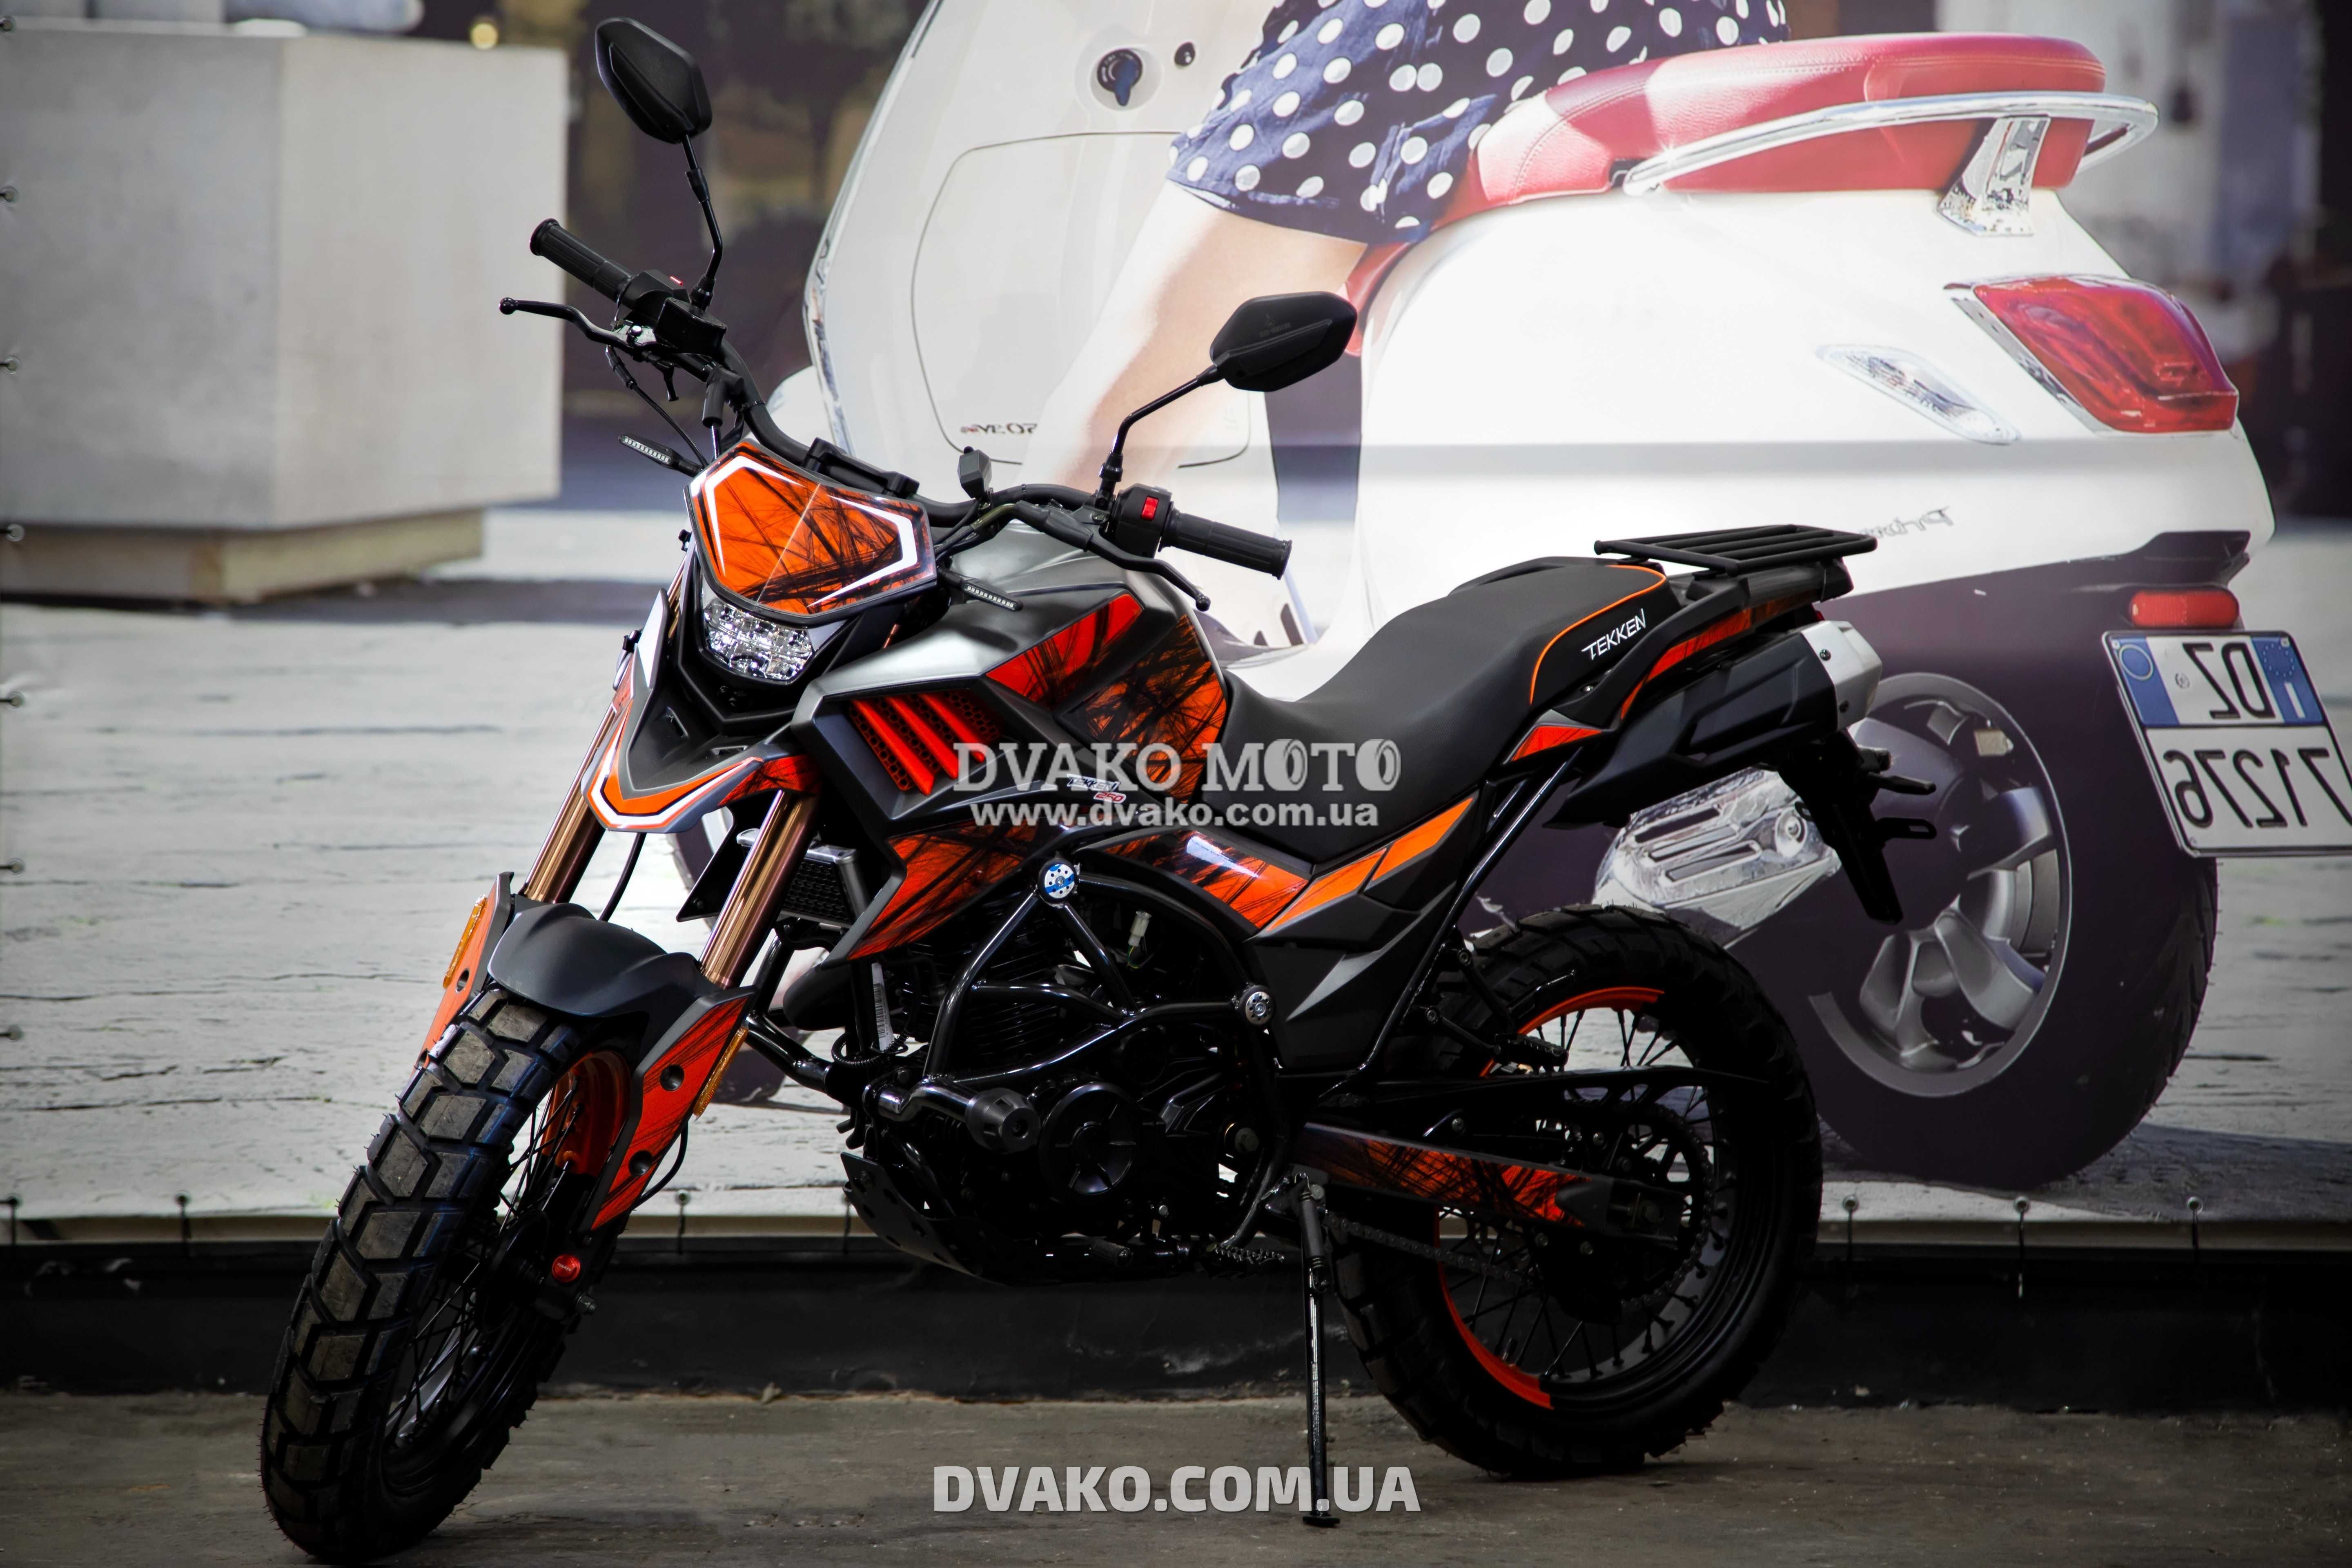 Новый Мотоцикл Tekken 250, Кредит, Гарантия. (Мотосалон Dvako Moto)